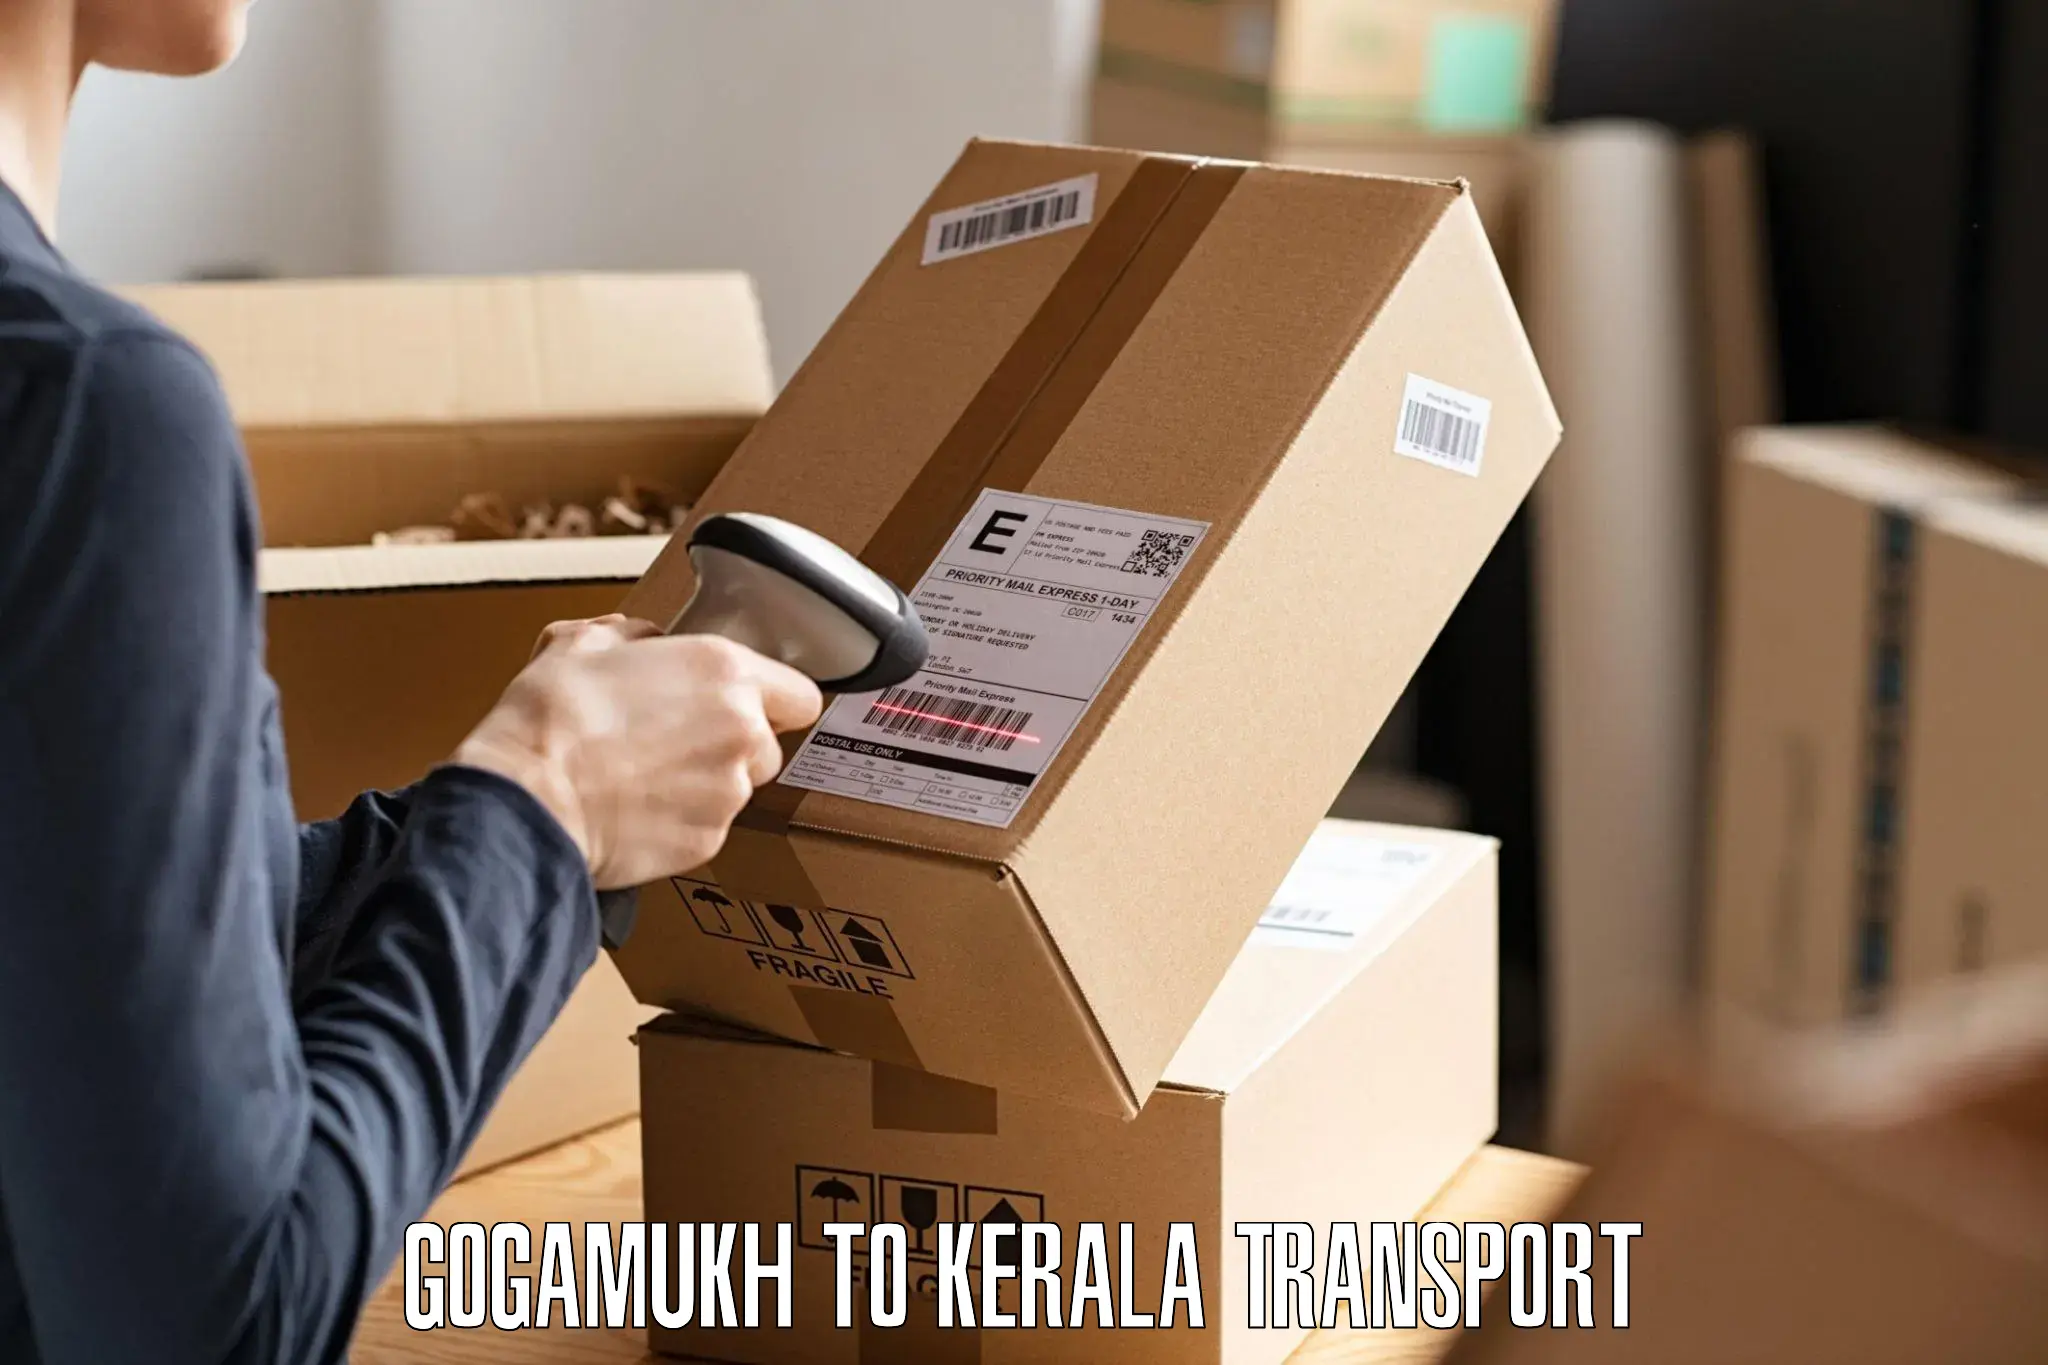 Transport services Gogamukh to Haripad